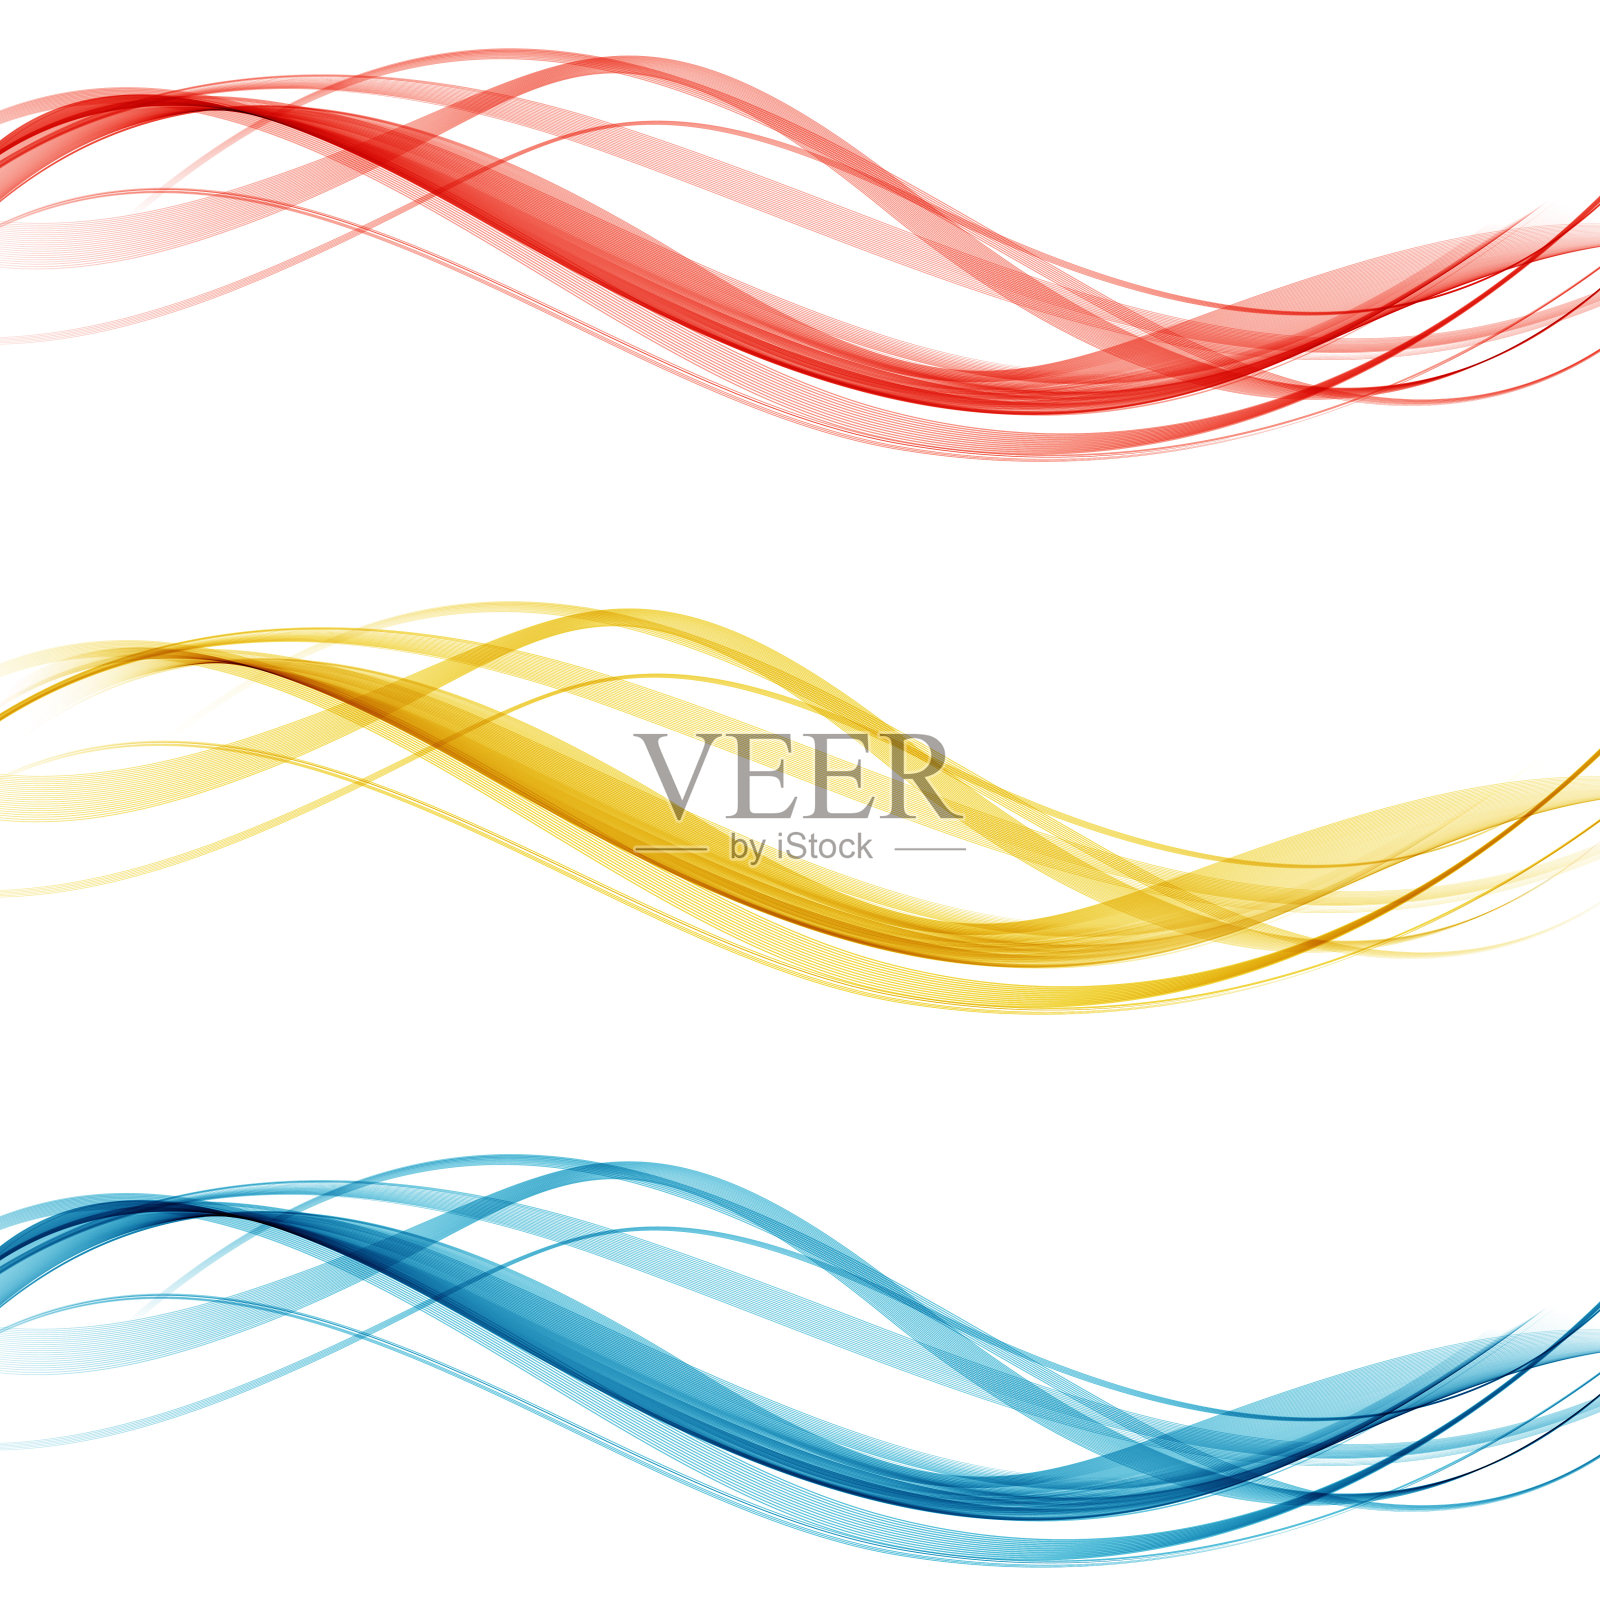 柔和明亮的彩色网页边框布局集美丽的现代swoosh波浪头收集。矢量图插画图片素材